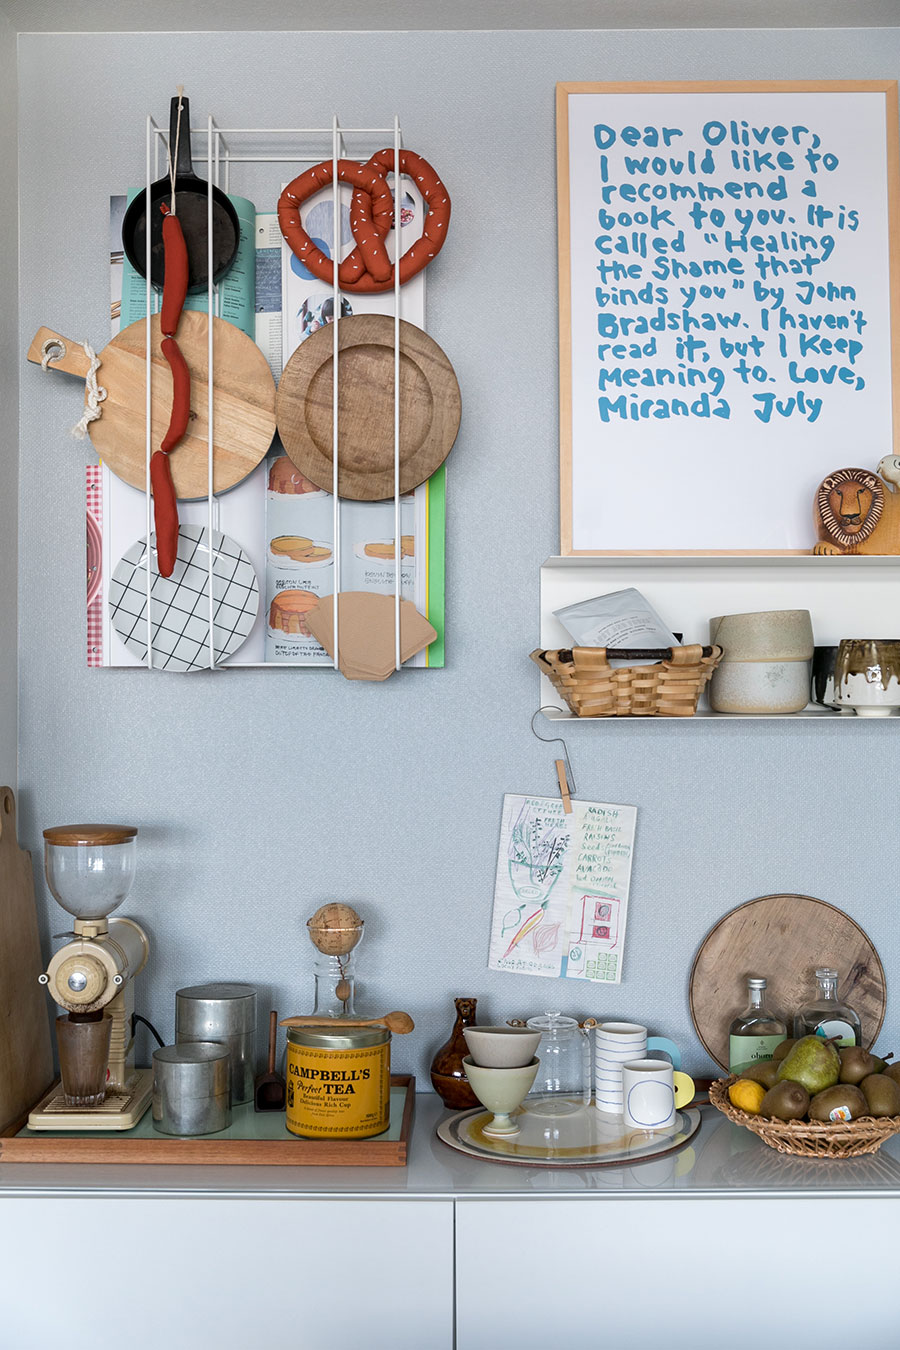 アートと日常の食器を一緒に飾っている。壁は引っ越してから自分でペイント。「右の白のラックはIKEA、左のワイヤーのラックはByTricoで購入しました」